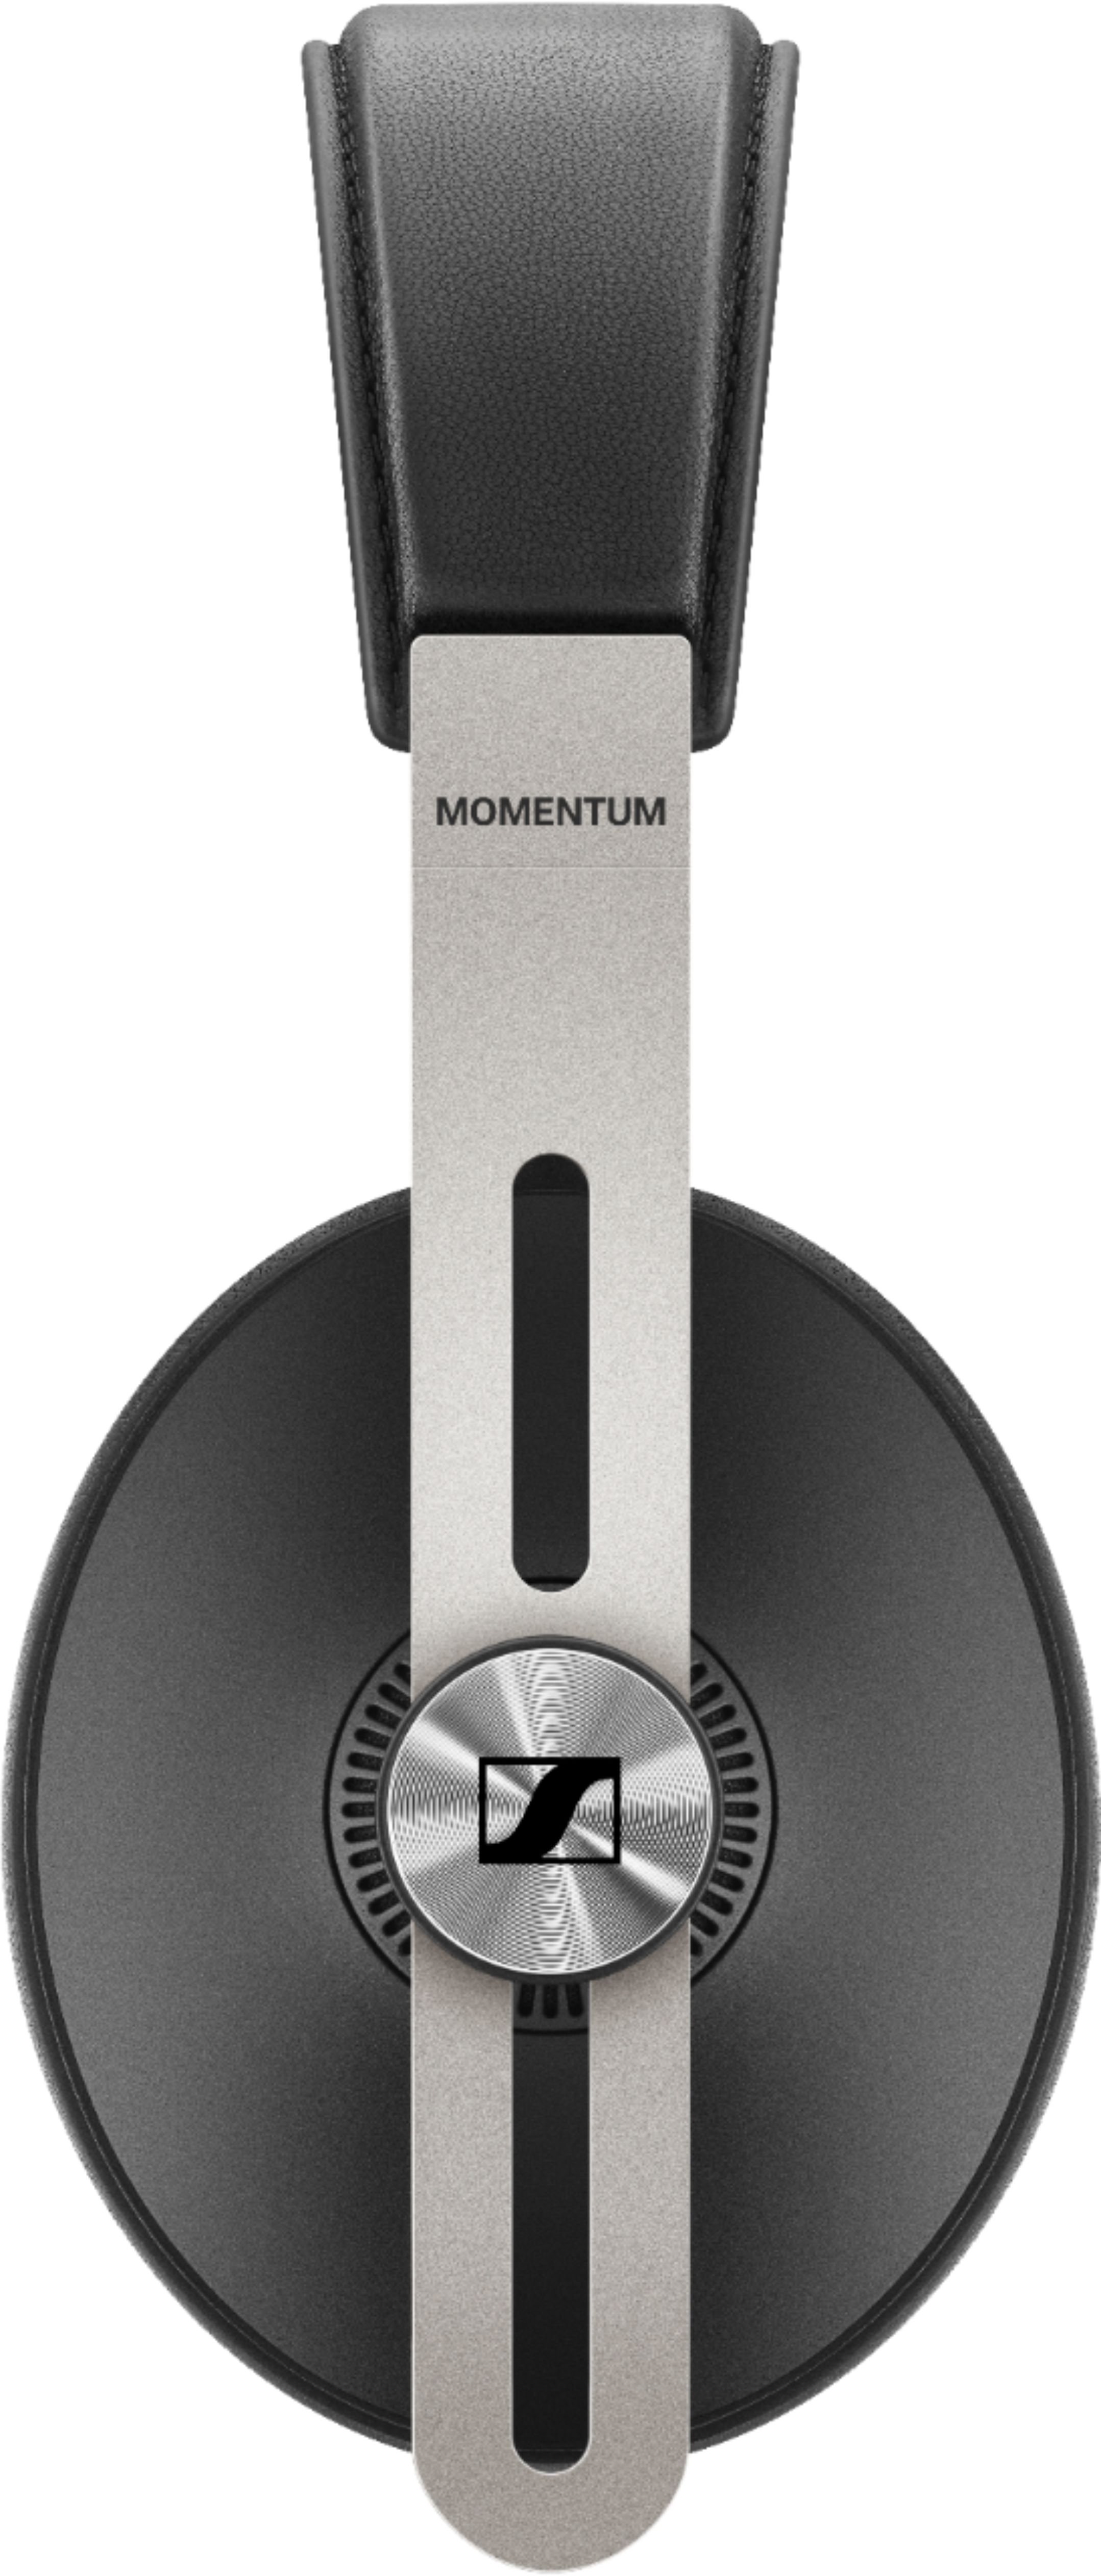 Sennheiser MOMENTUM Wireless Noise-Canceling Over-the-Ear 